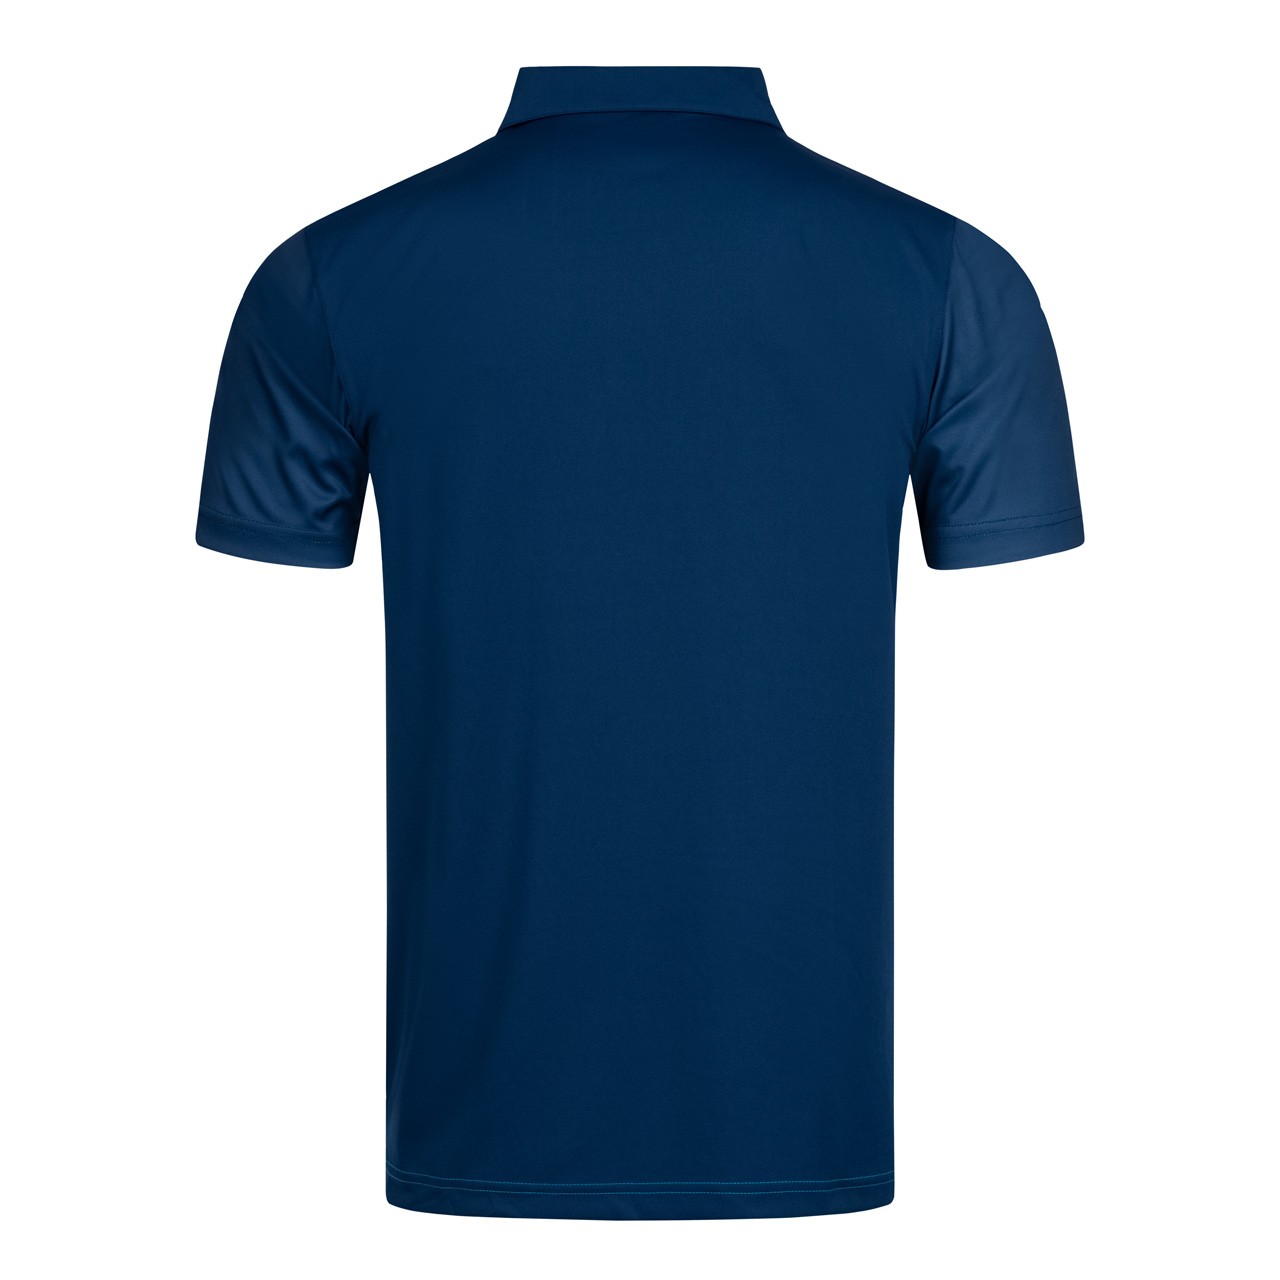 DONIC Shirt Flow navy/cyan | Tabletennis11.com (TT11)